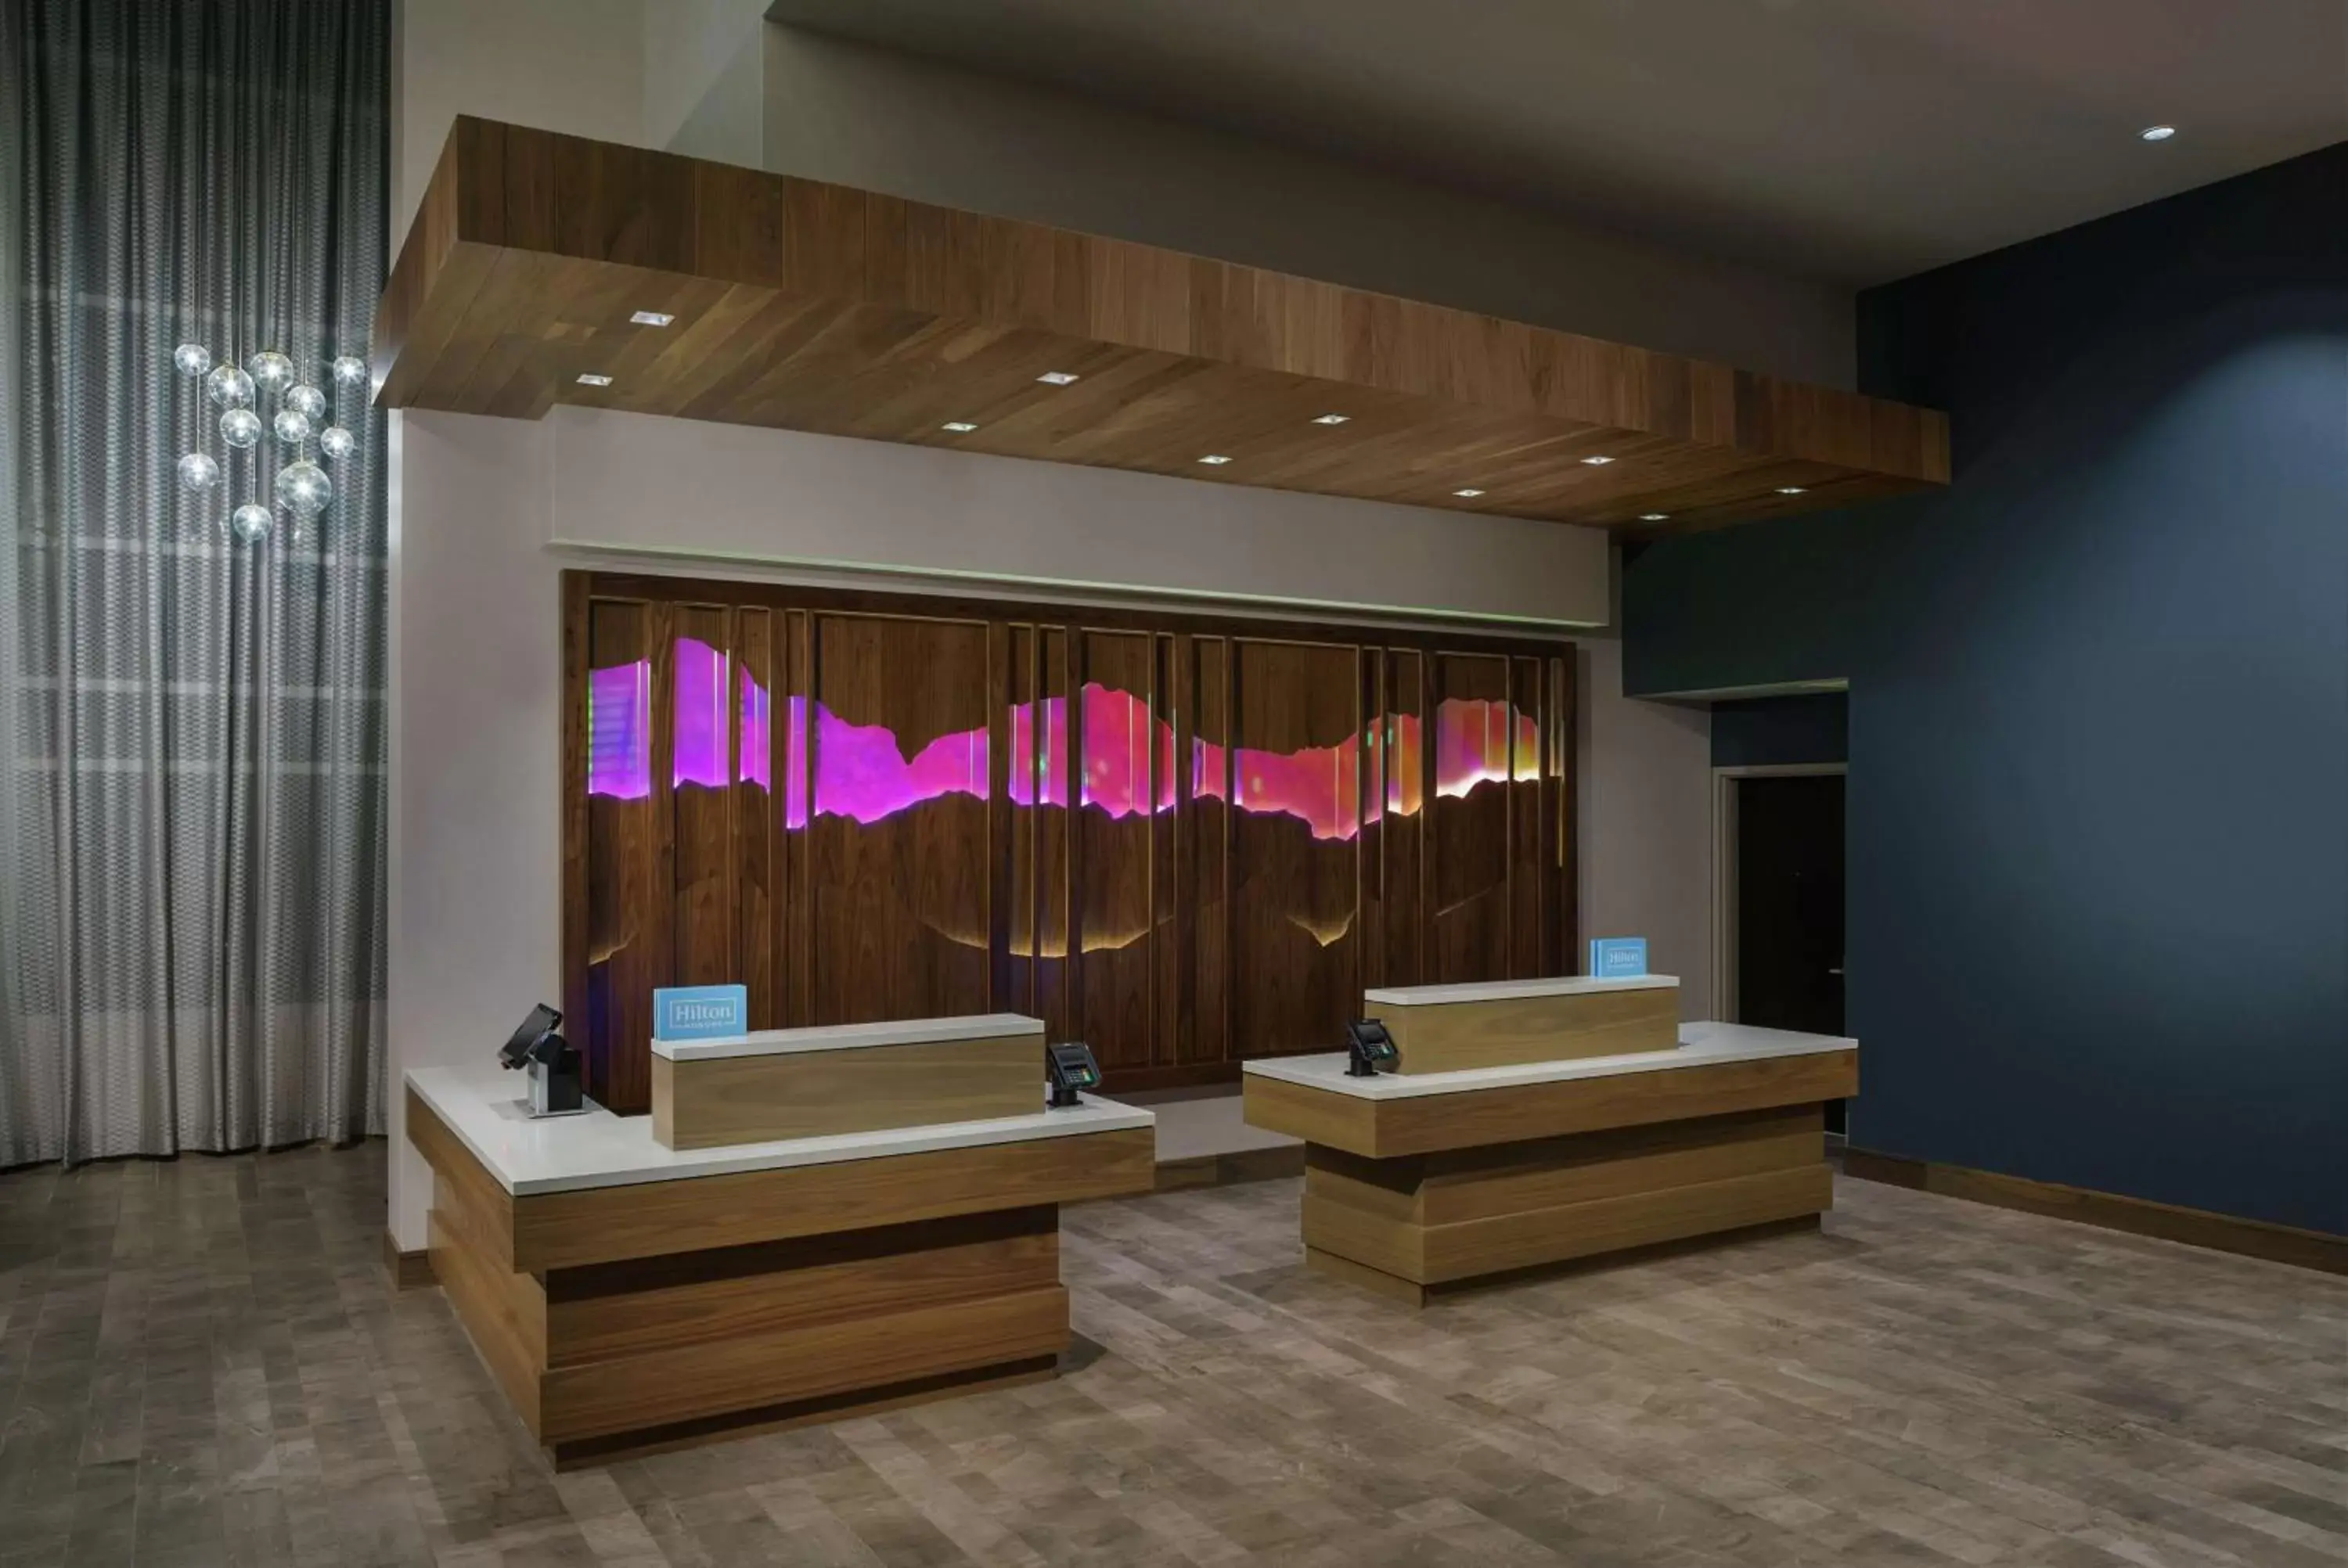 Lobby or reception in Hilton Garden Inn Sunnyvale